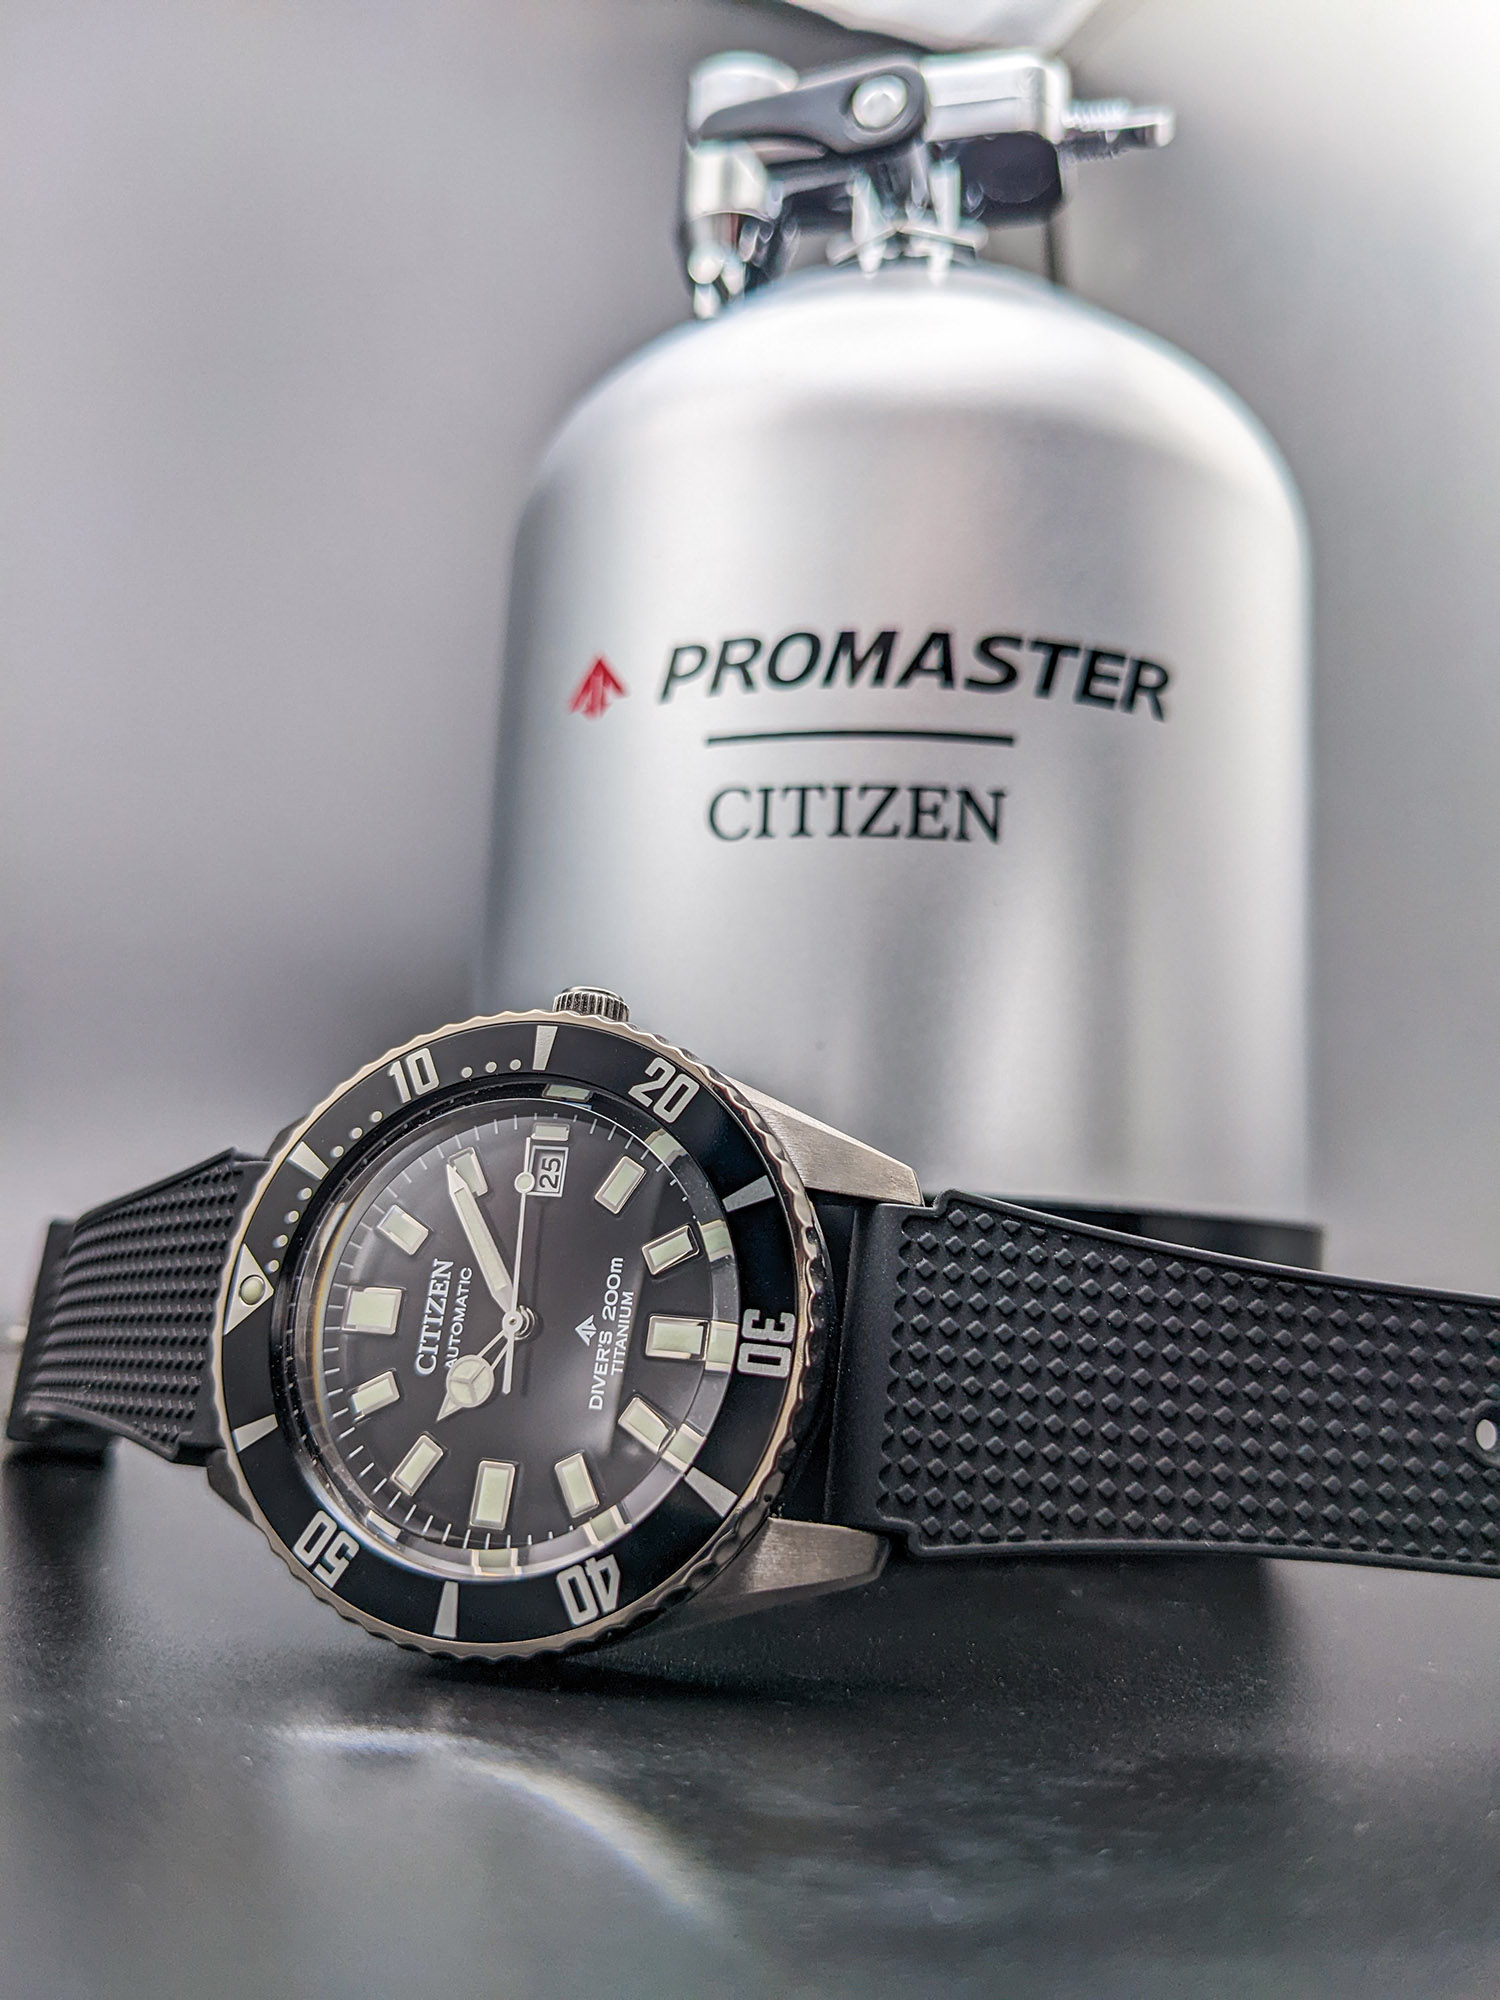 Citizen Promaster C900 Titanium Aquamount Diver 200M Digital